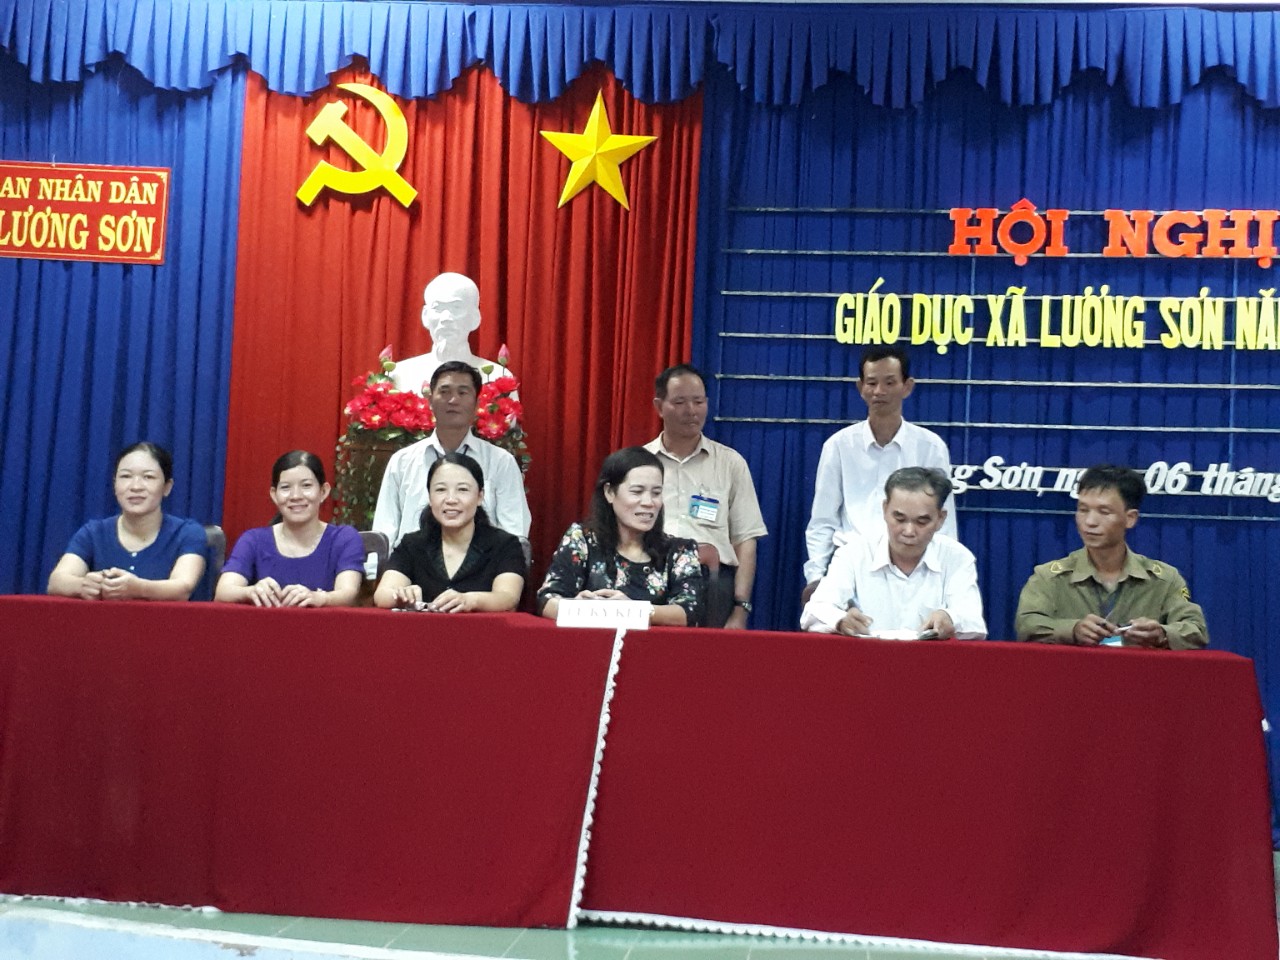 Hội nghị giáo dục xã Lương Sơn